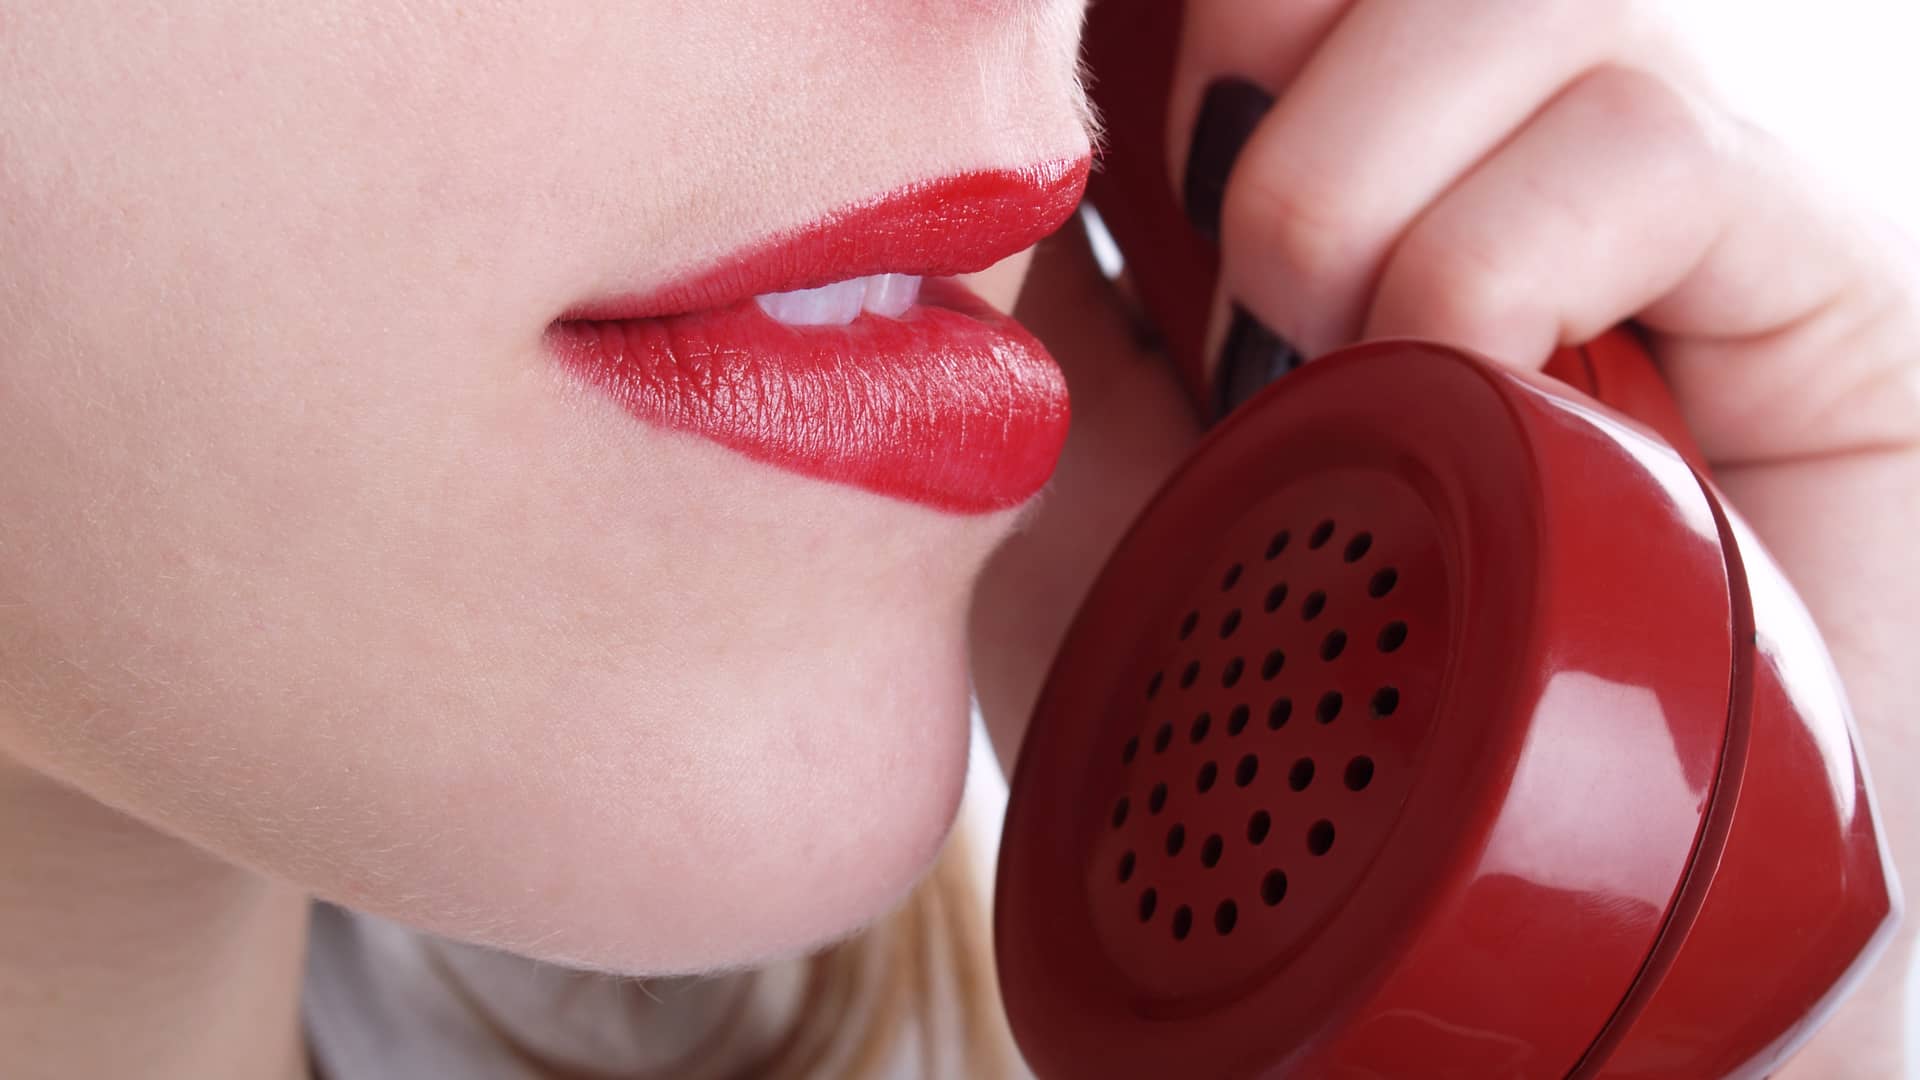 Teleoperadora de atención al cliente banco santander atendiendo llamada